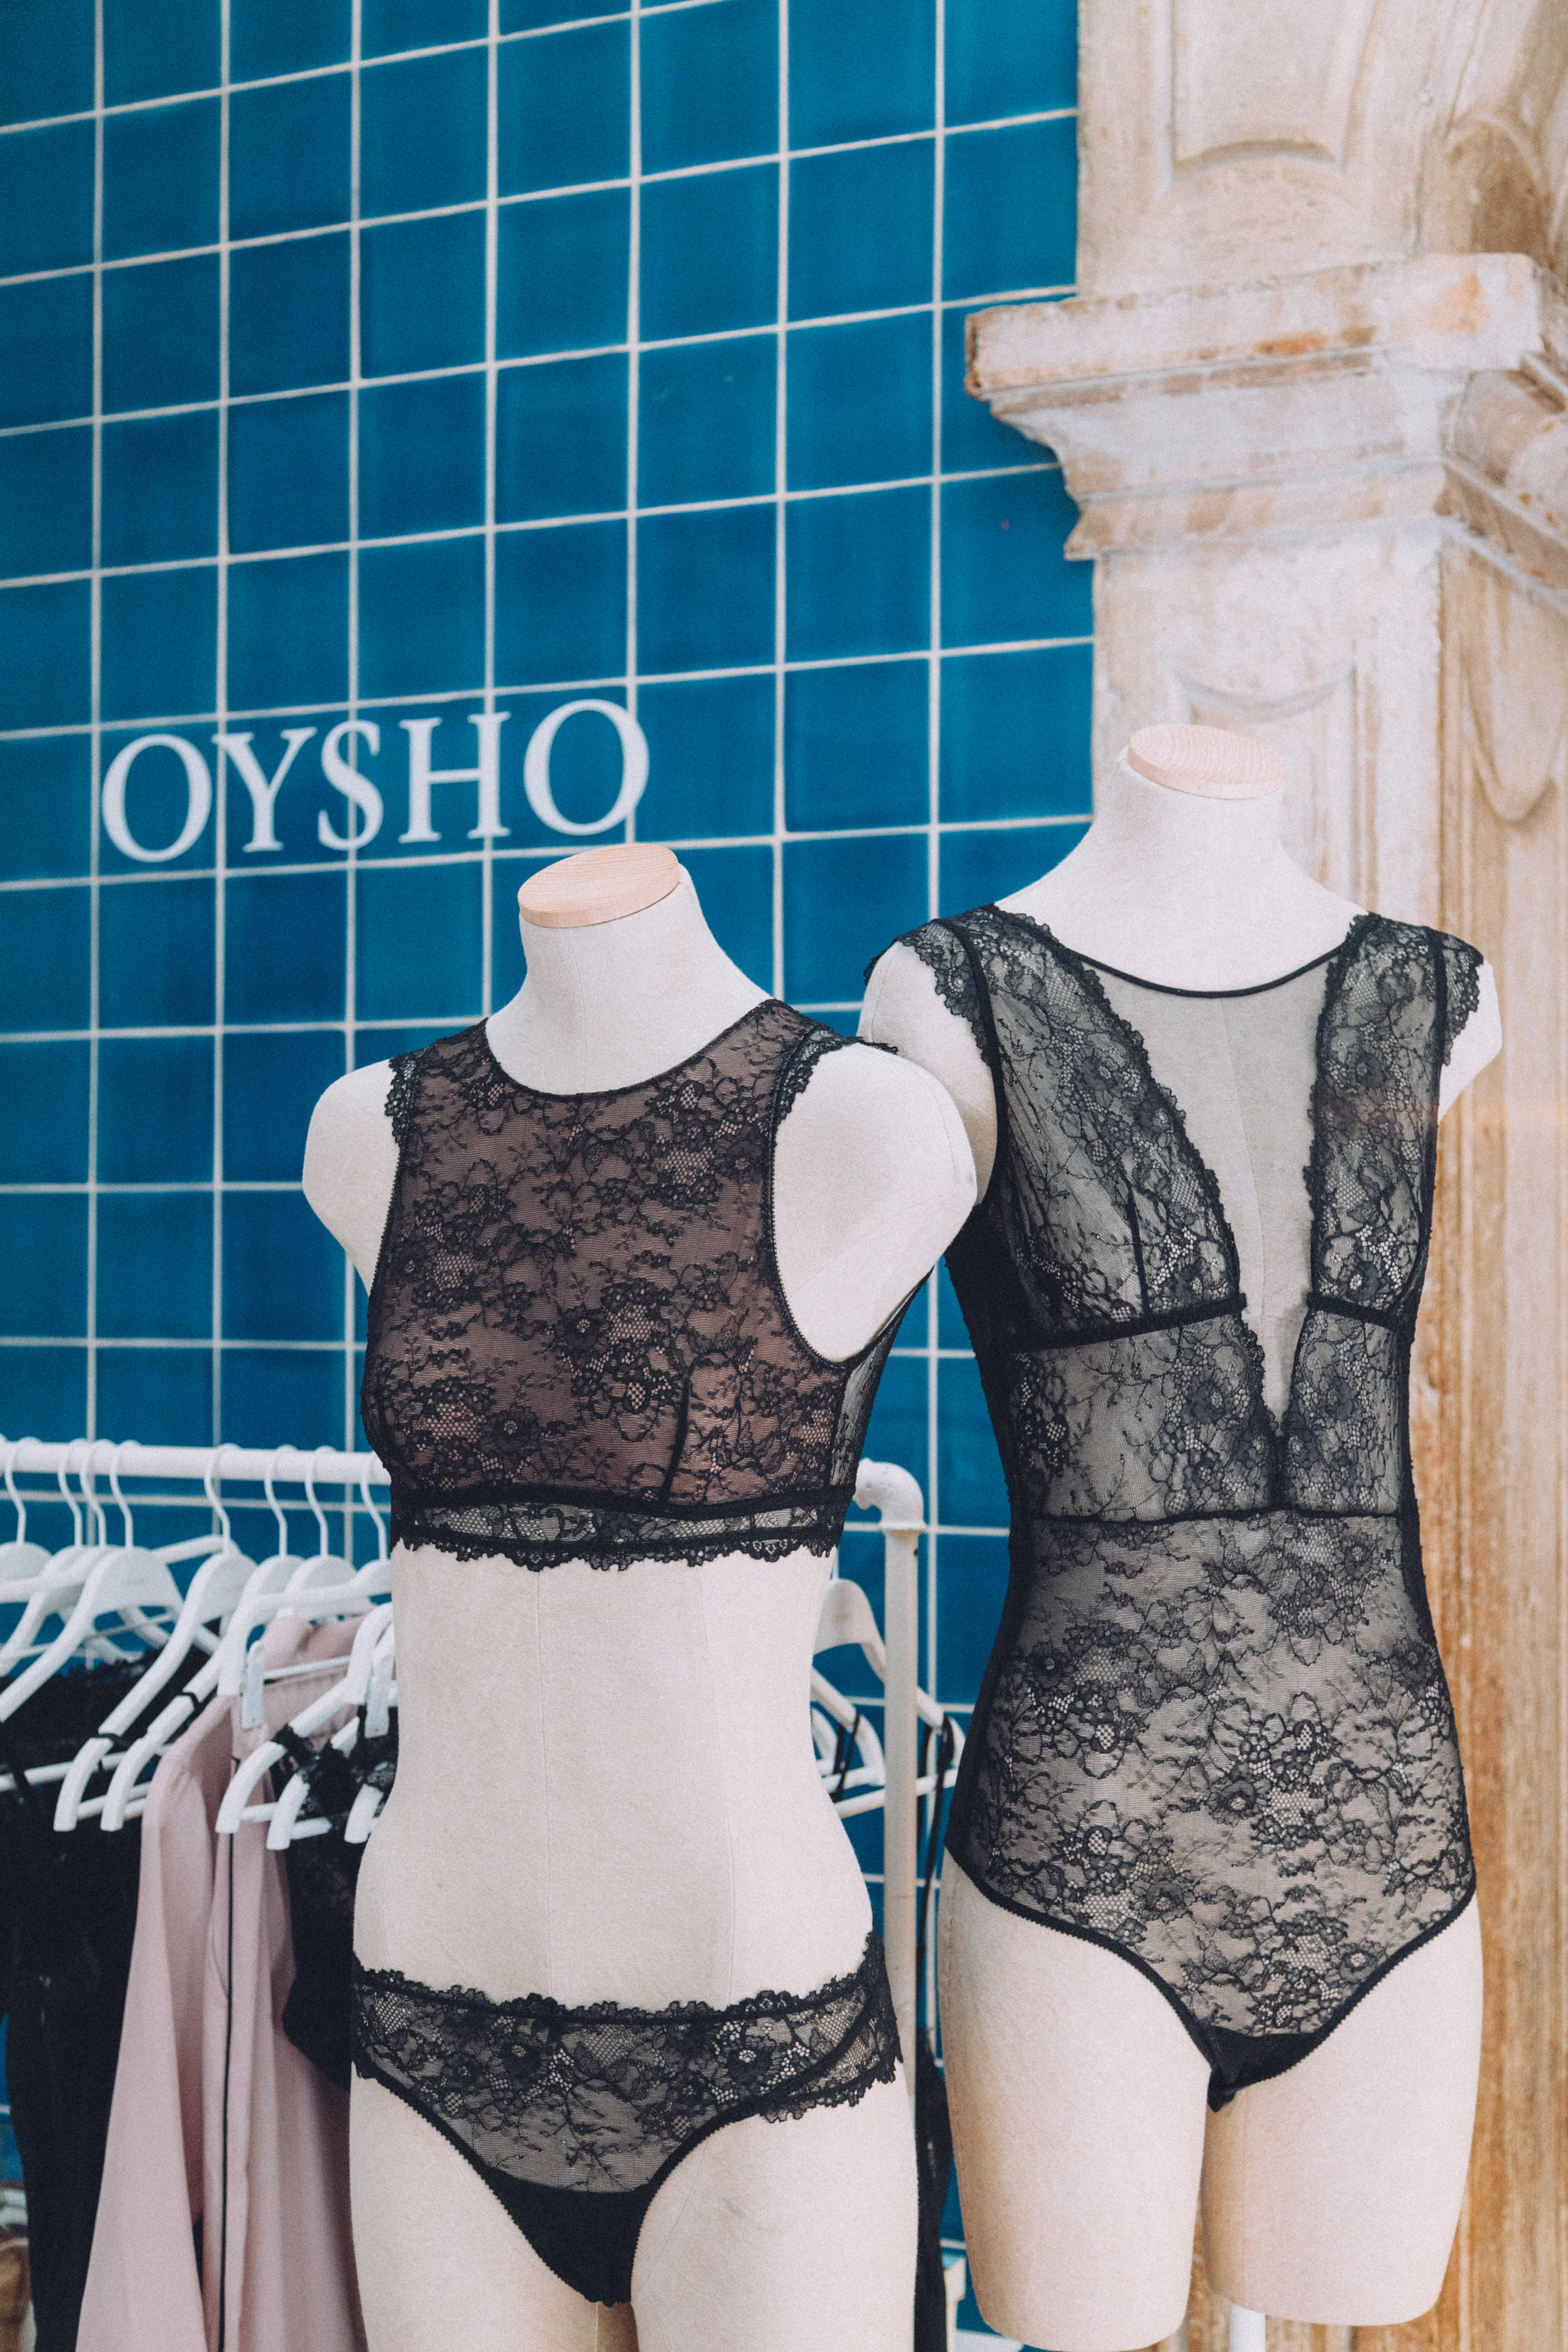 Oysho apresenta nova coleção primavera/verão 2019 - Moda - Máxima